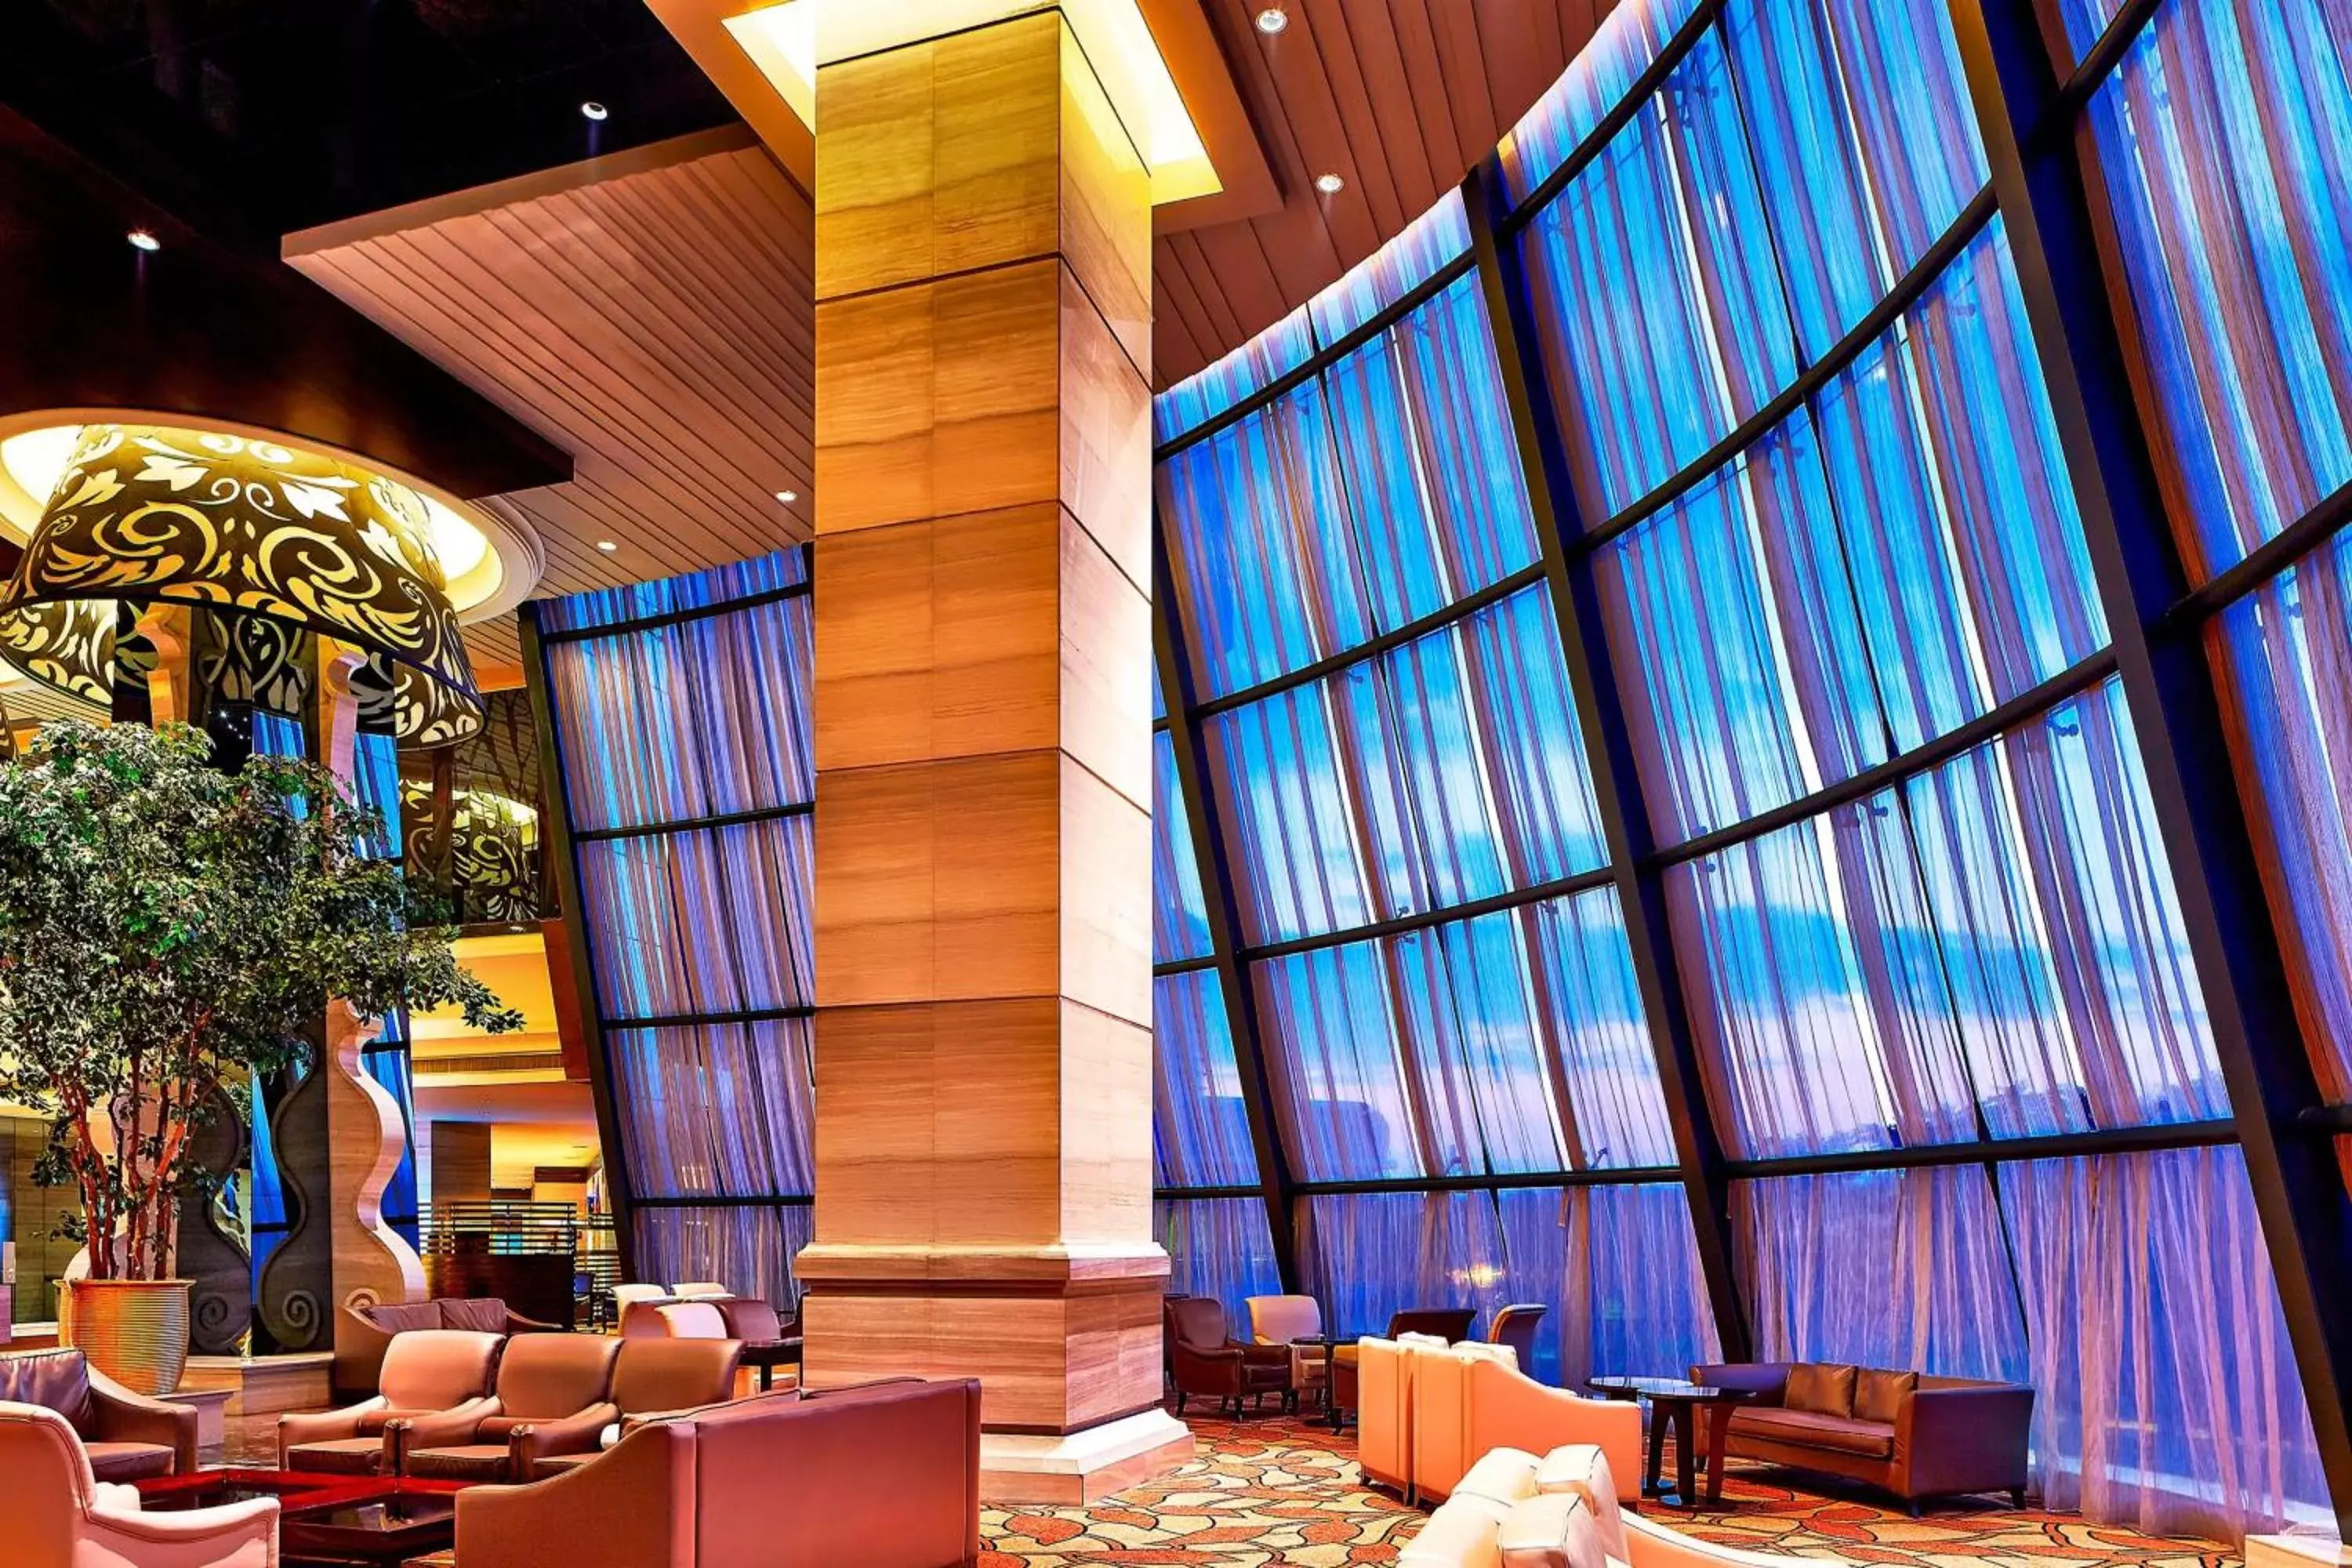 Lobby or reception in Sheraton Shunde Hotel